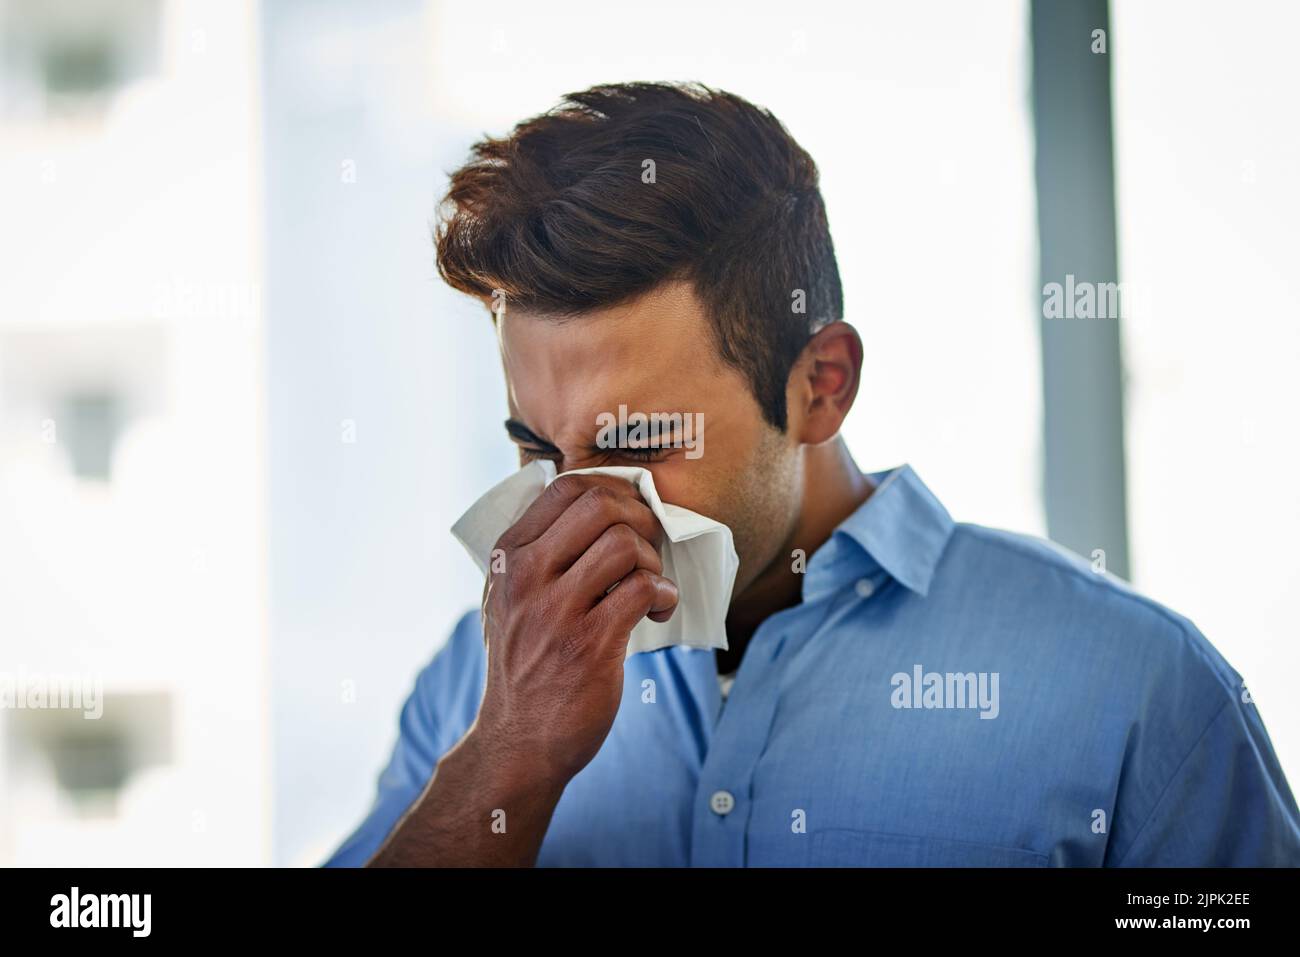 Necesita un refuerzo inmunológico para su defensa contra la gripe, un joven hombre de negocios que se sopla la nariz en el trabajo. Foto de stock